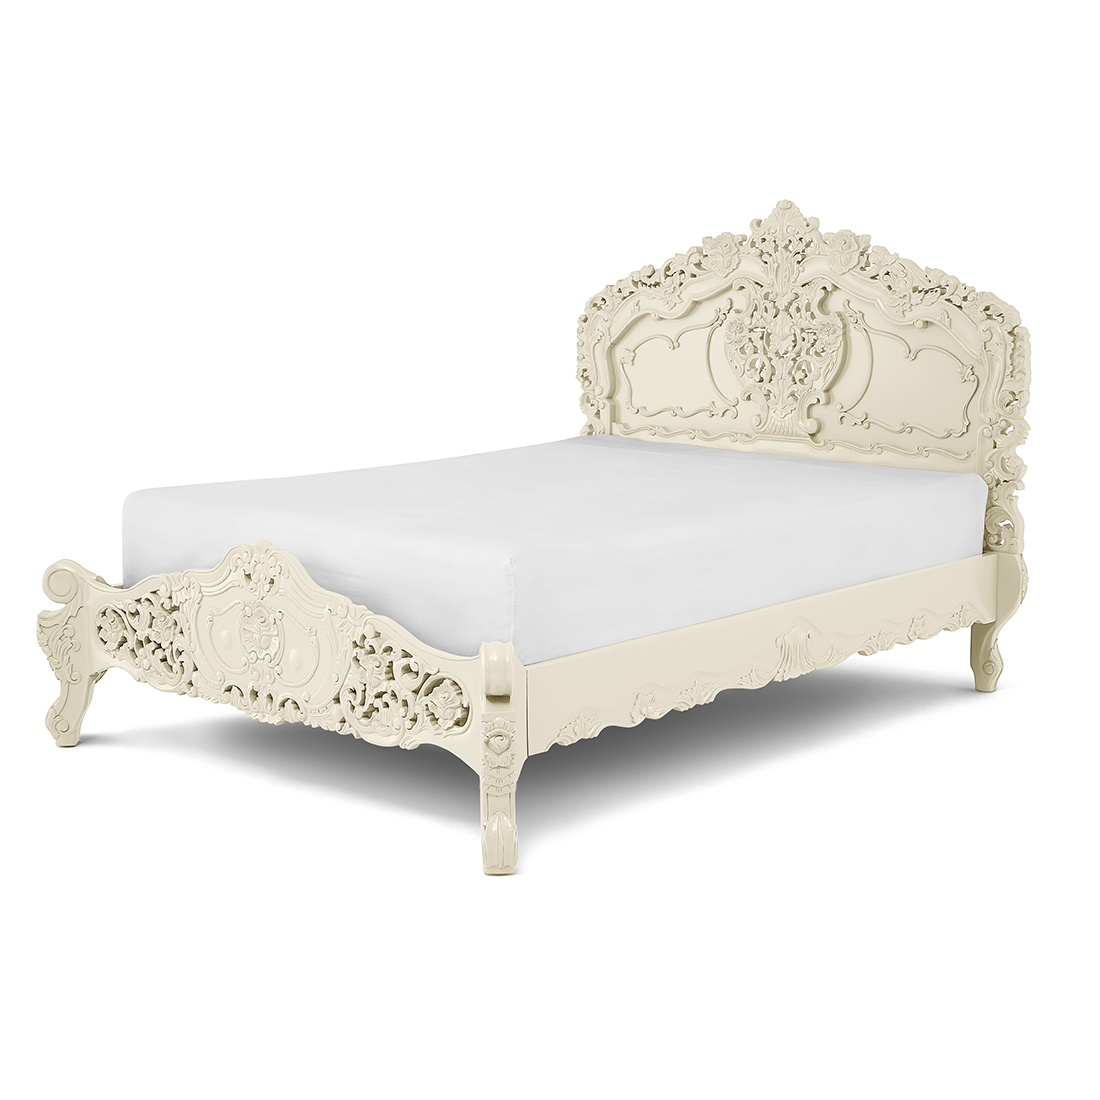 Parisian Cream Rococo Bed